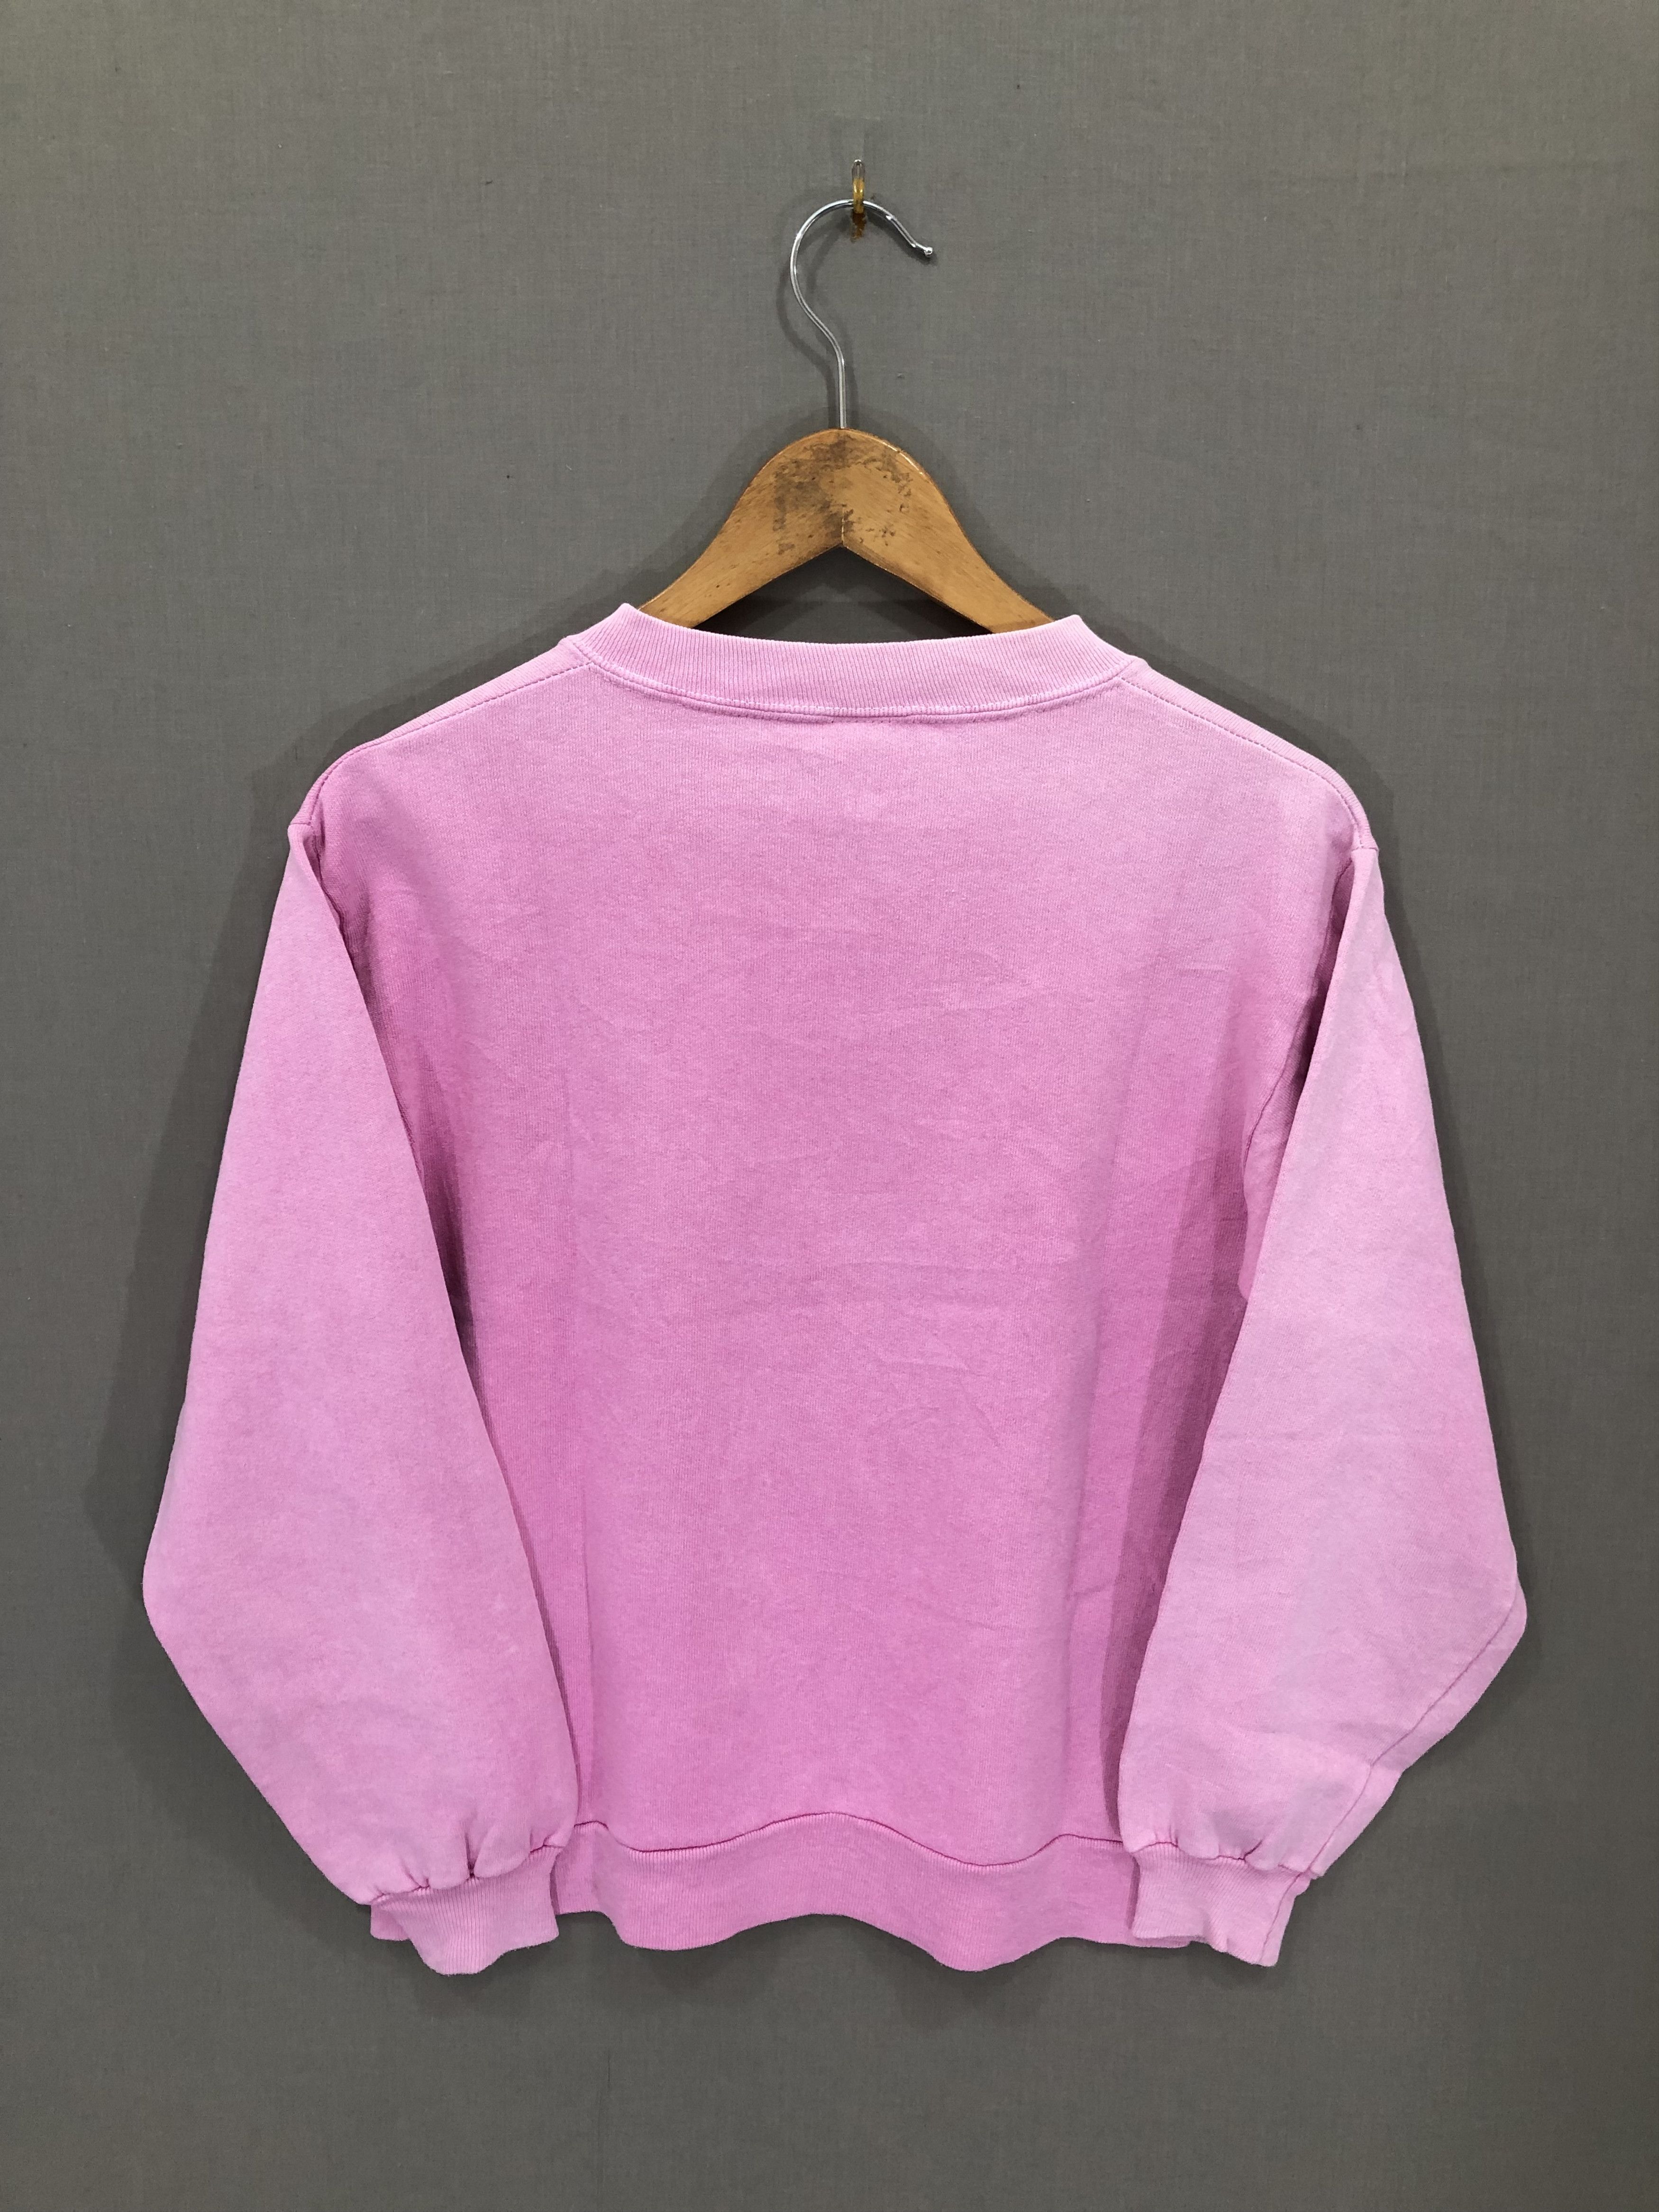 Mickey Mouse Vintage Pink Mickey Mouse Sweatshirt XS #5600-1-212-IRA Size US XS / EU 42 / 0 - 4 Thumbnail